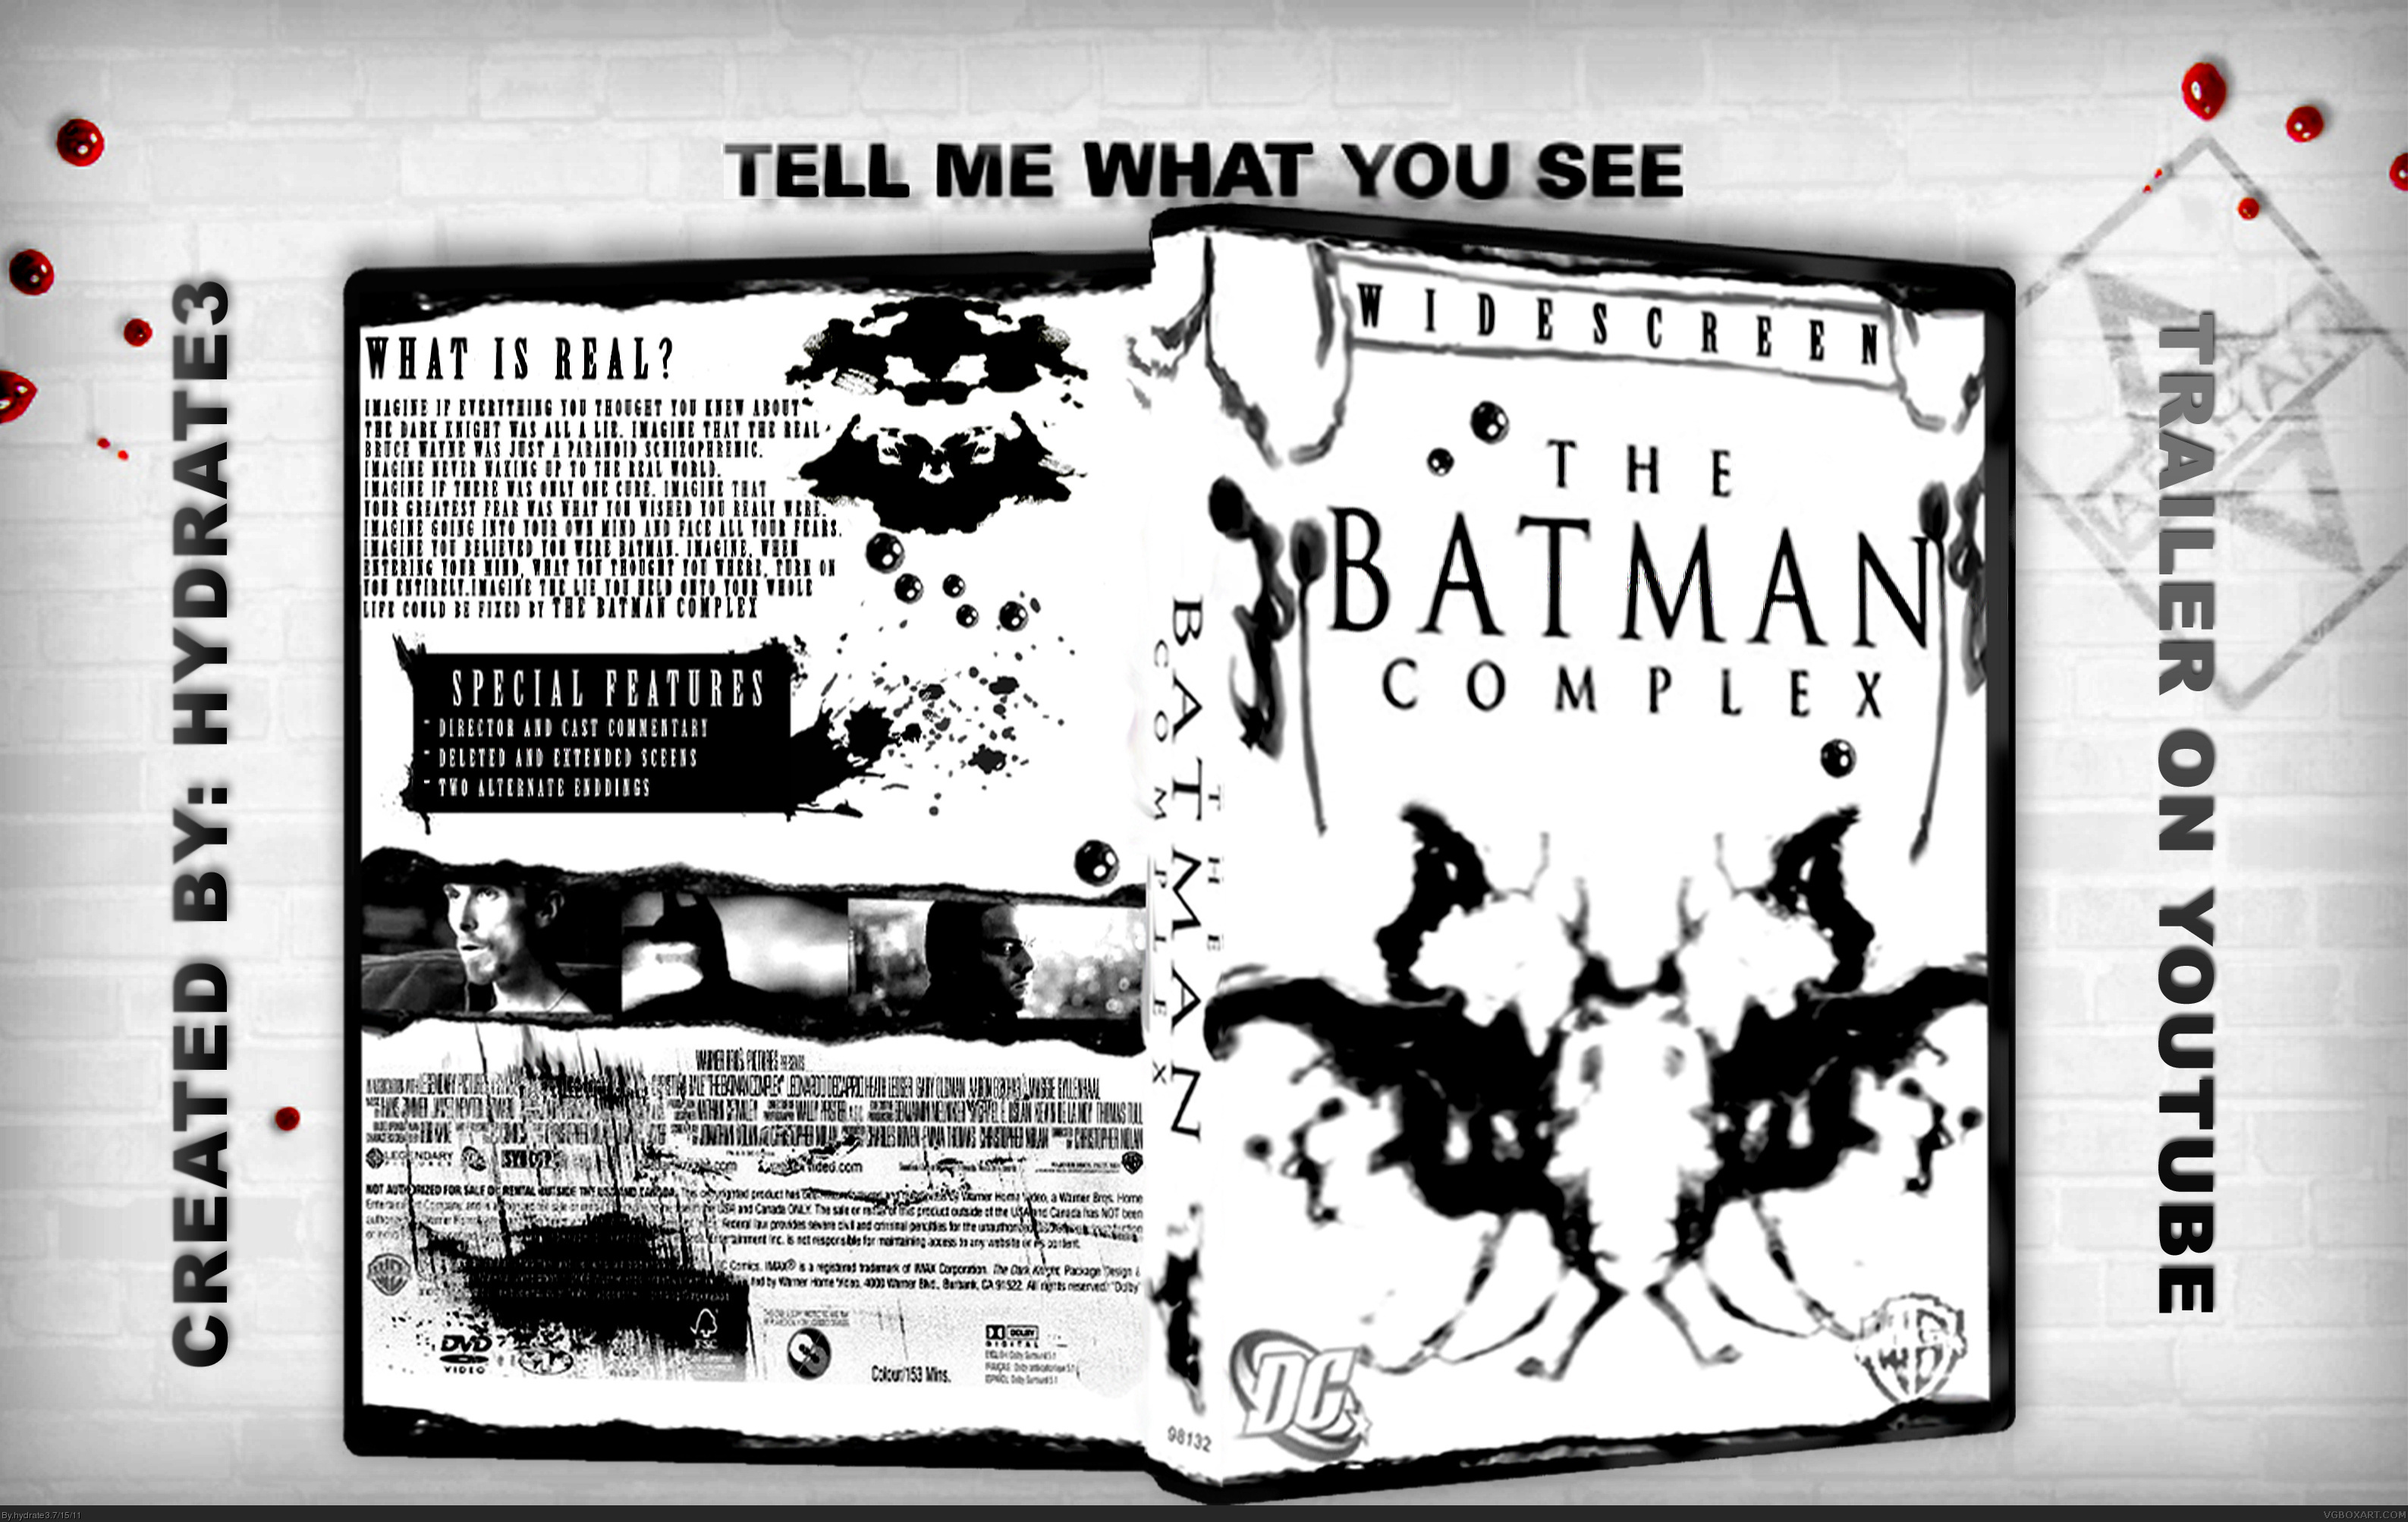 The Batman Complex box cover